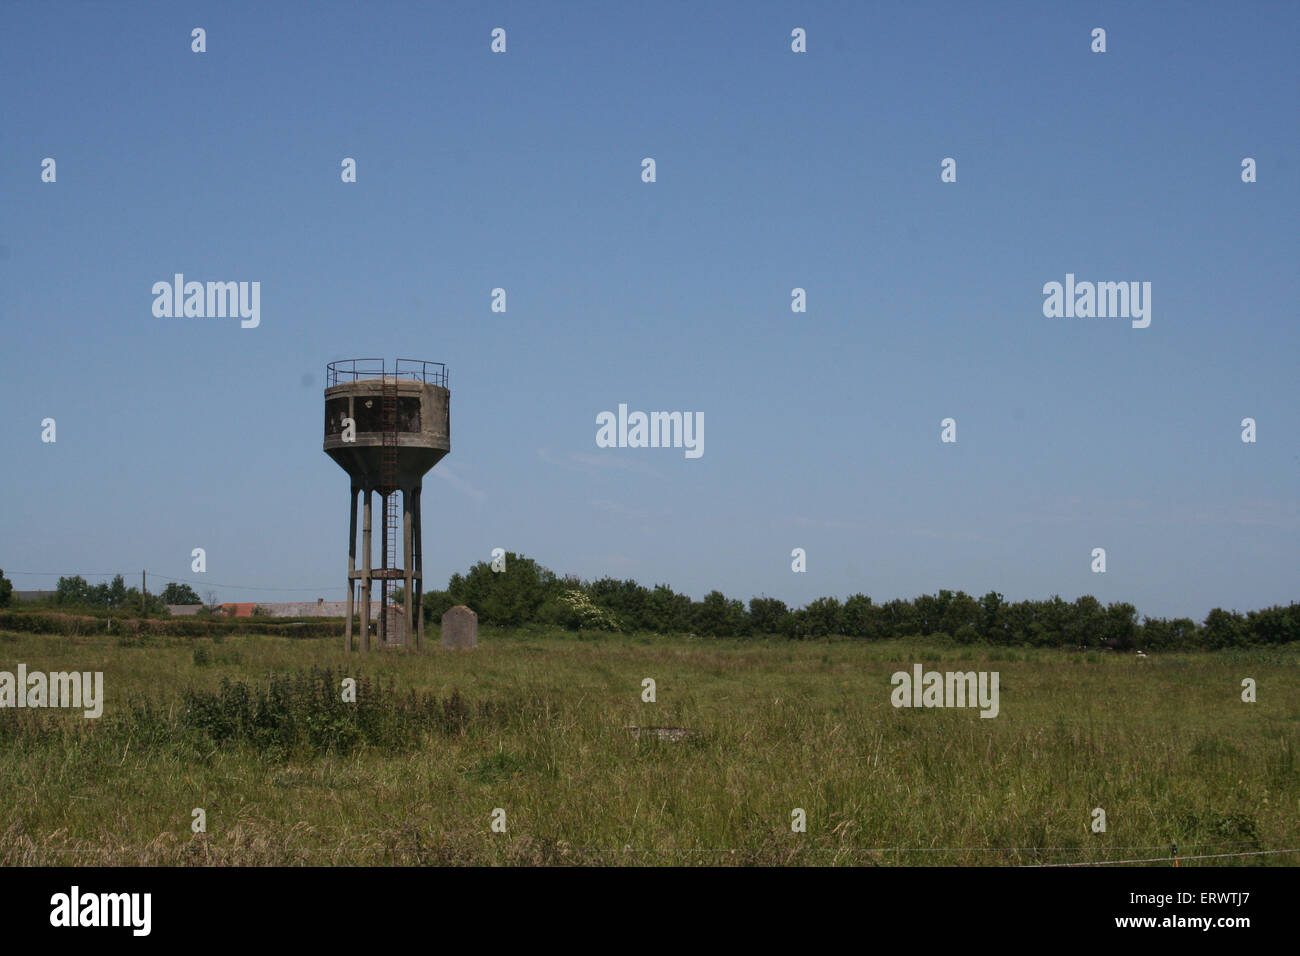 La DEUXIÈME GUERRE MONDIALE américain le stockage de l'eau laissée dans  ancienne base militaire américaine. Normandie France Photo Stock - Alamy